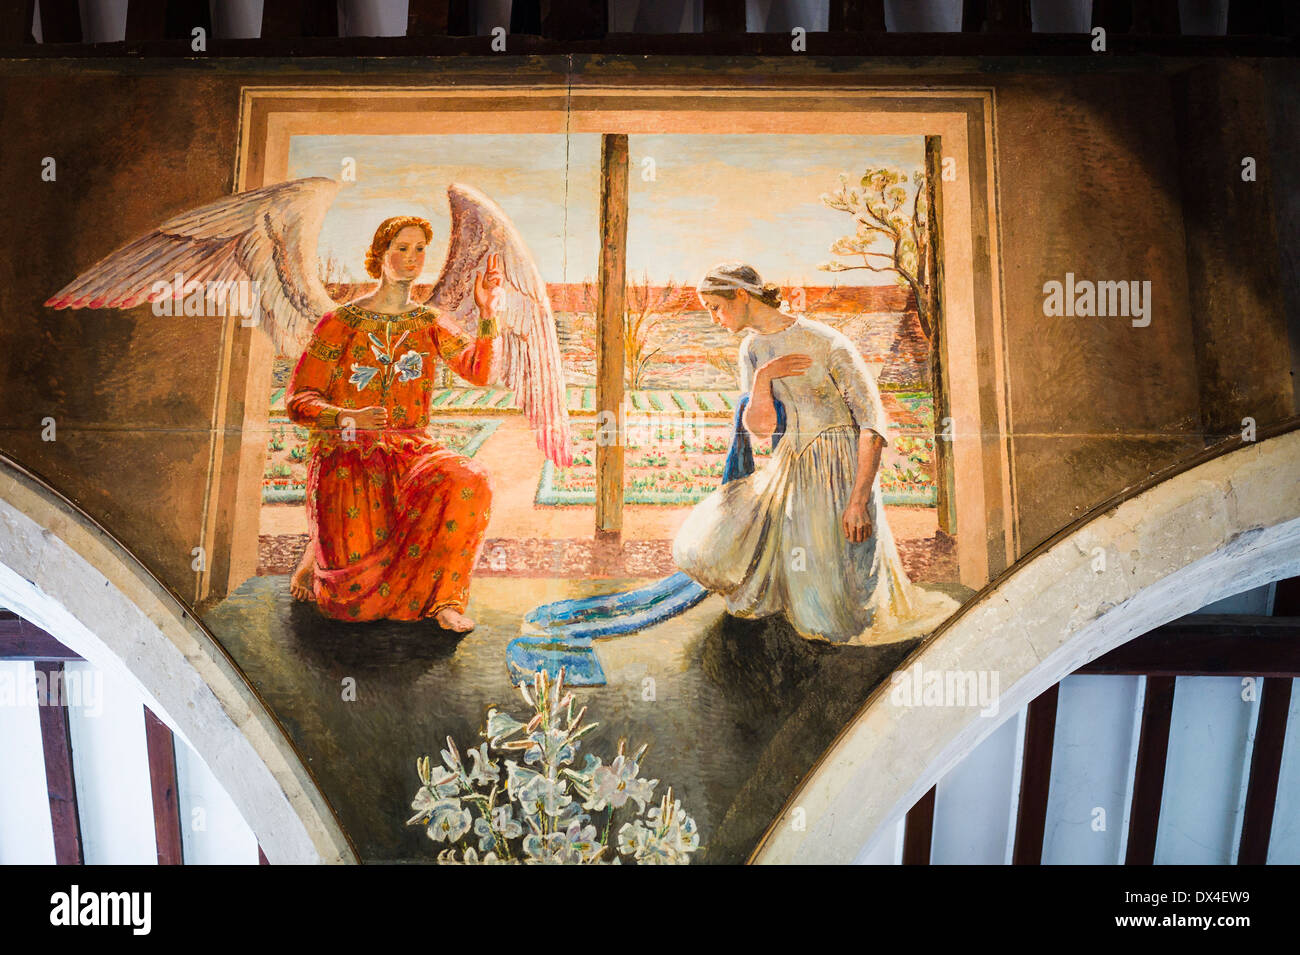 Winged angel dispose d'une peinture murale religieuse dans une église anglaise Banque D'Images